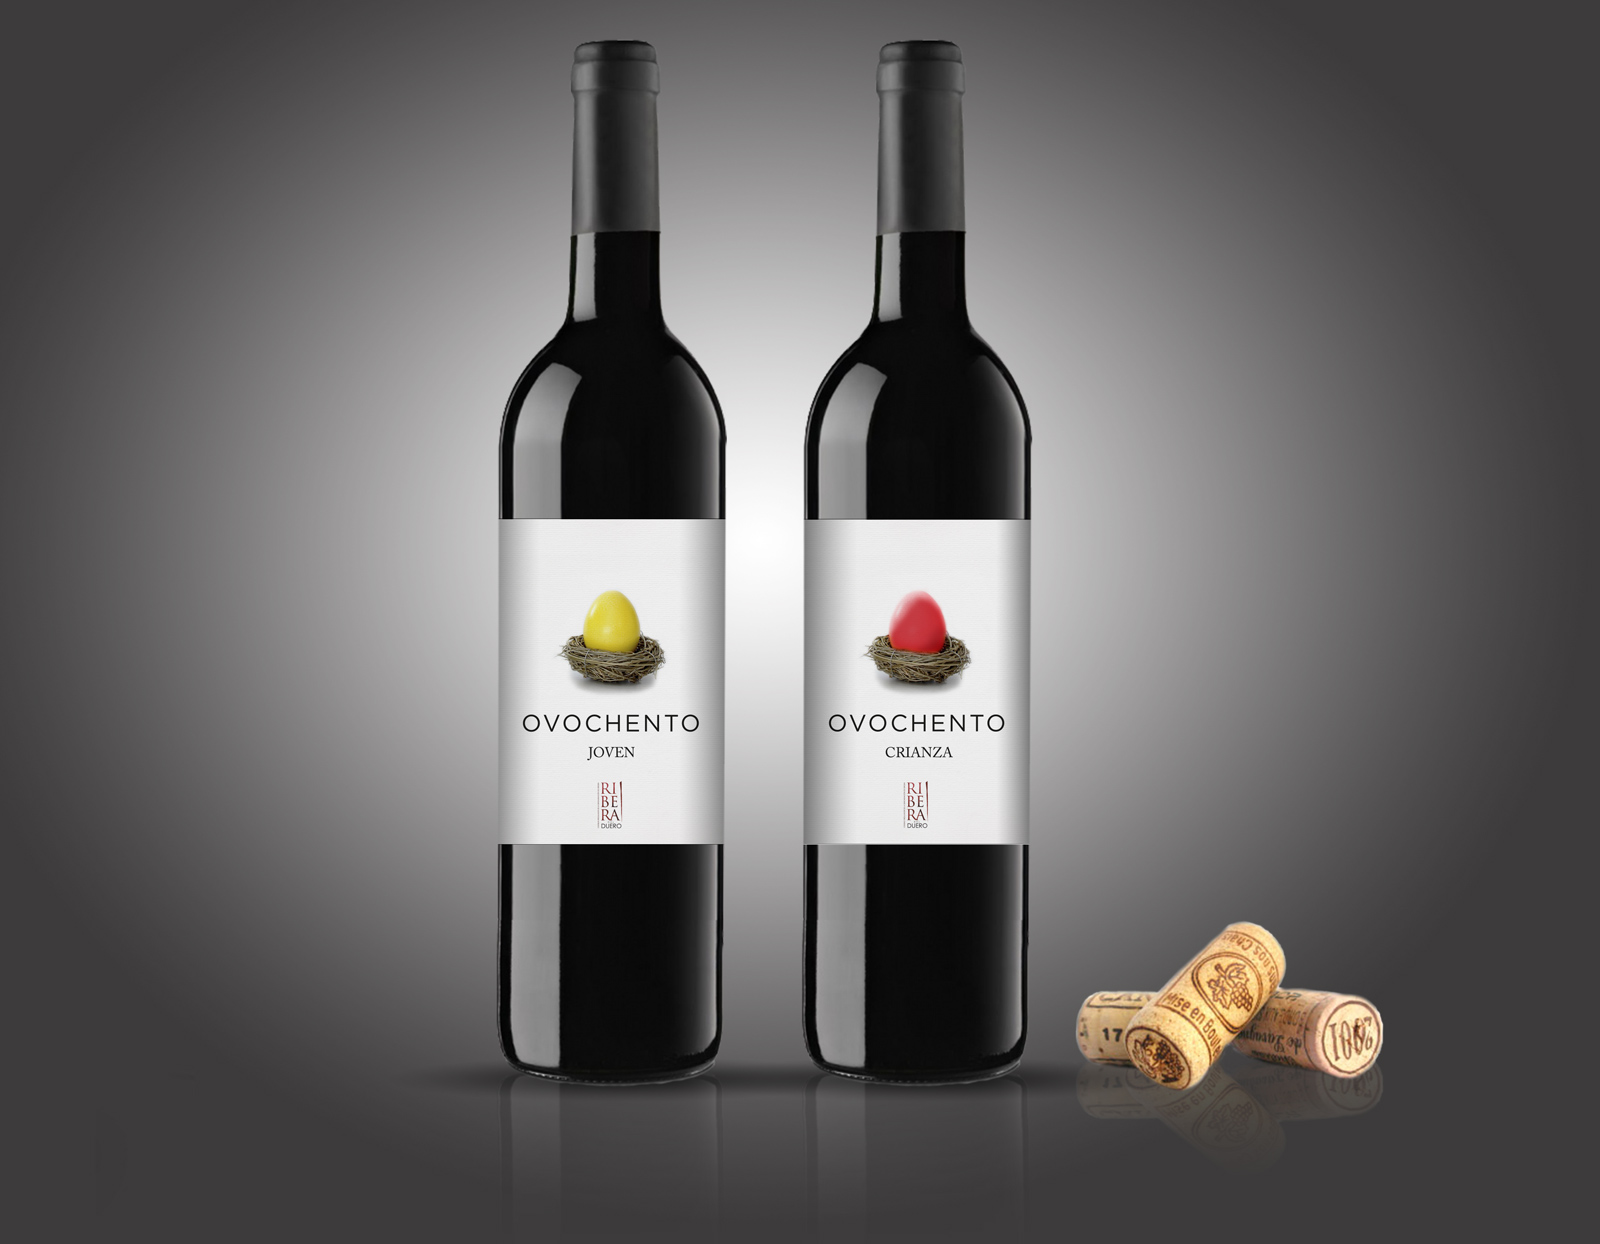 Diseño gráfico y creativo de etiquetas y packaging de vino para OVOCHENTO